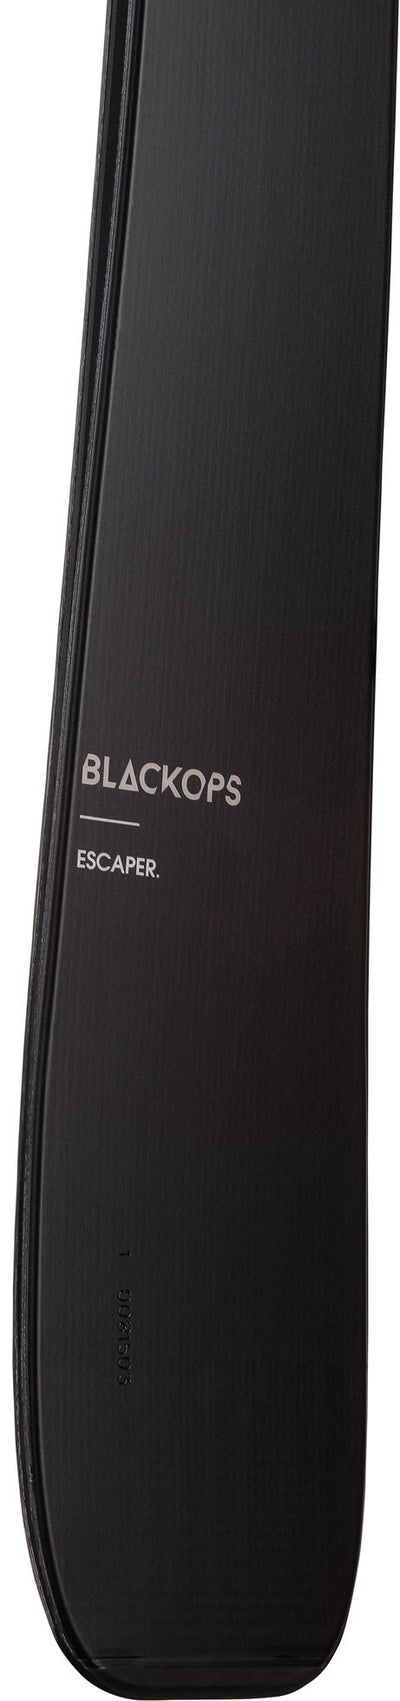 BLACKOPS ESCAPER SPX12